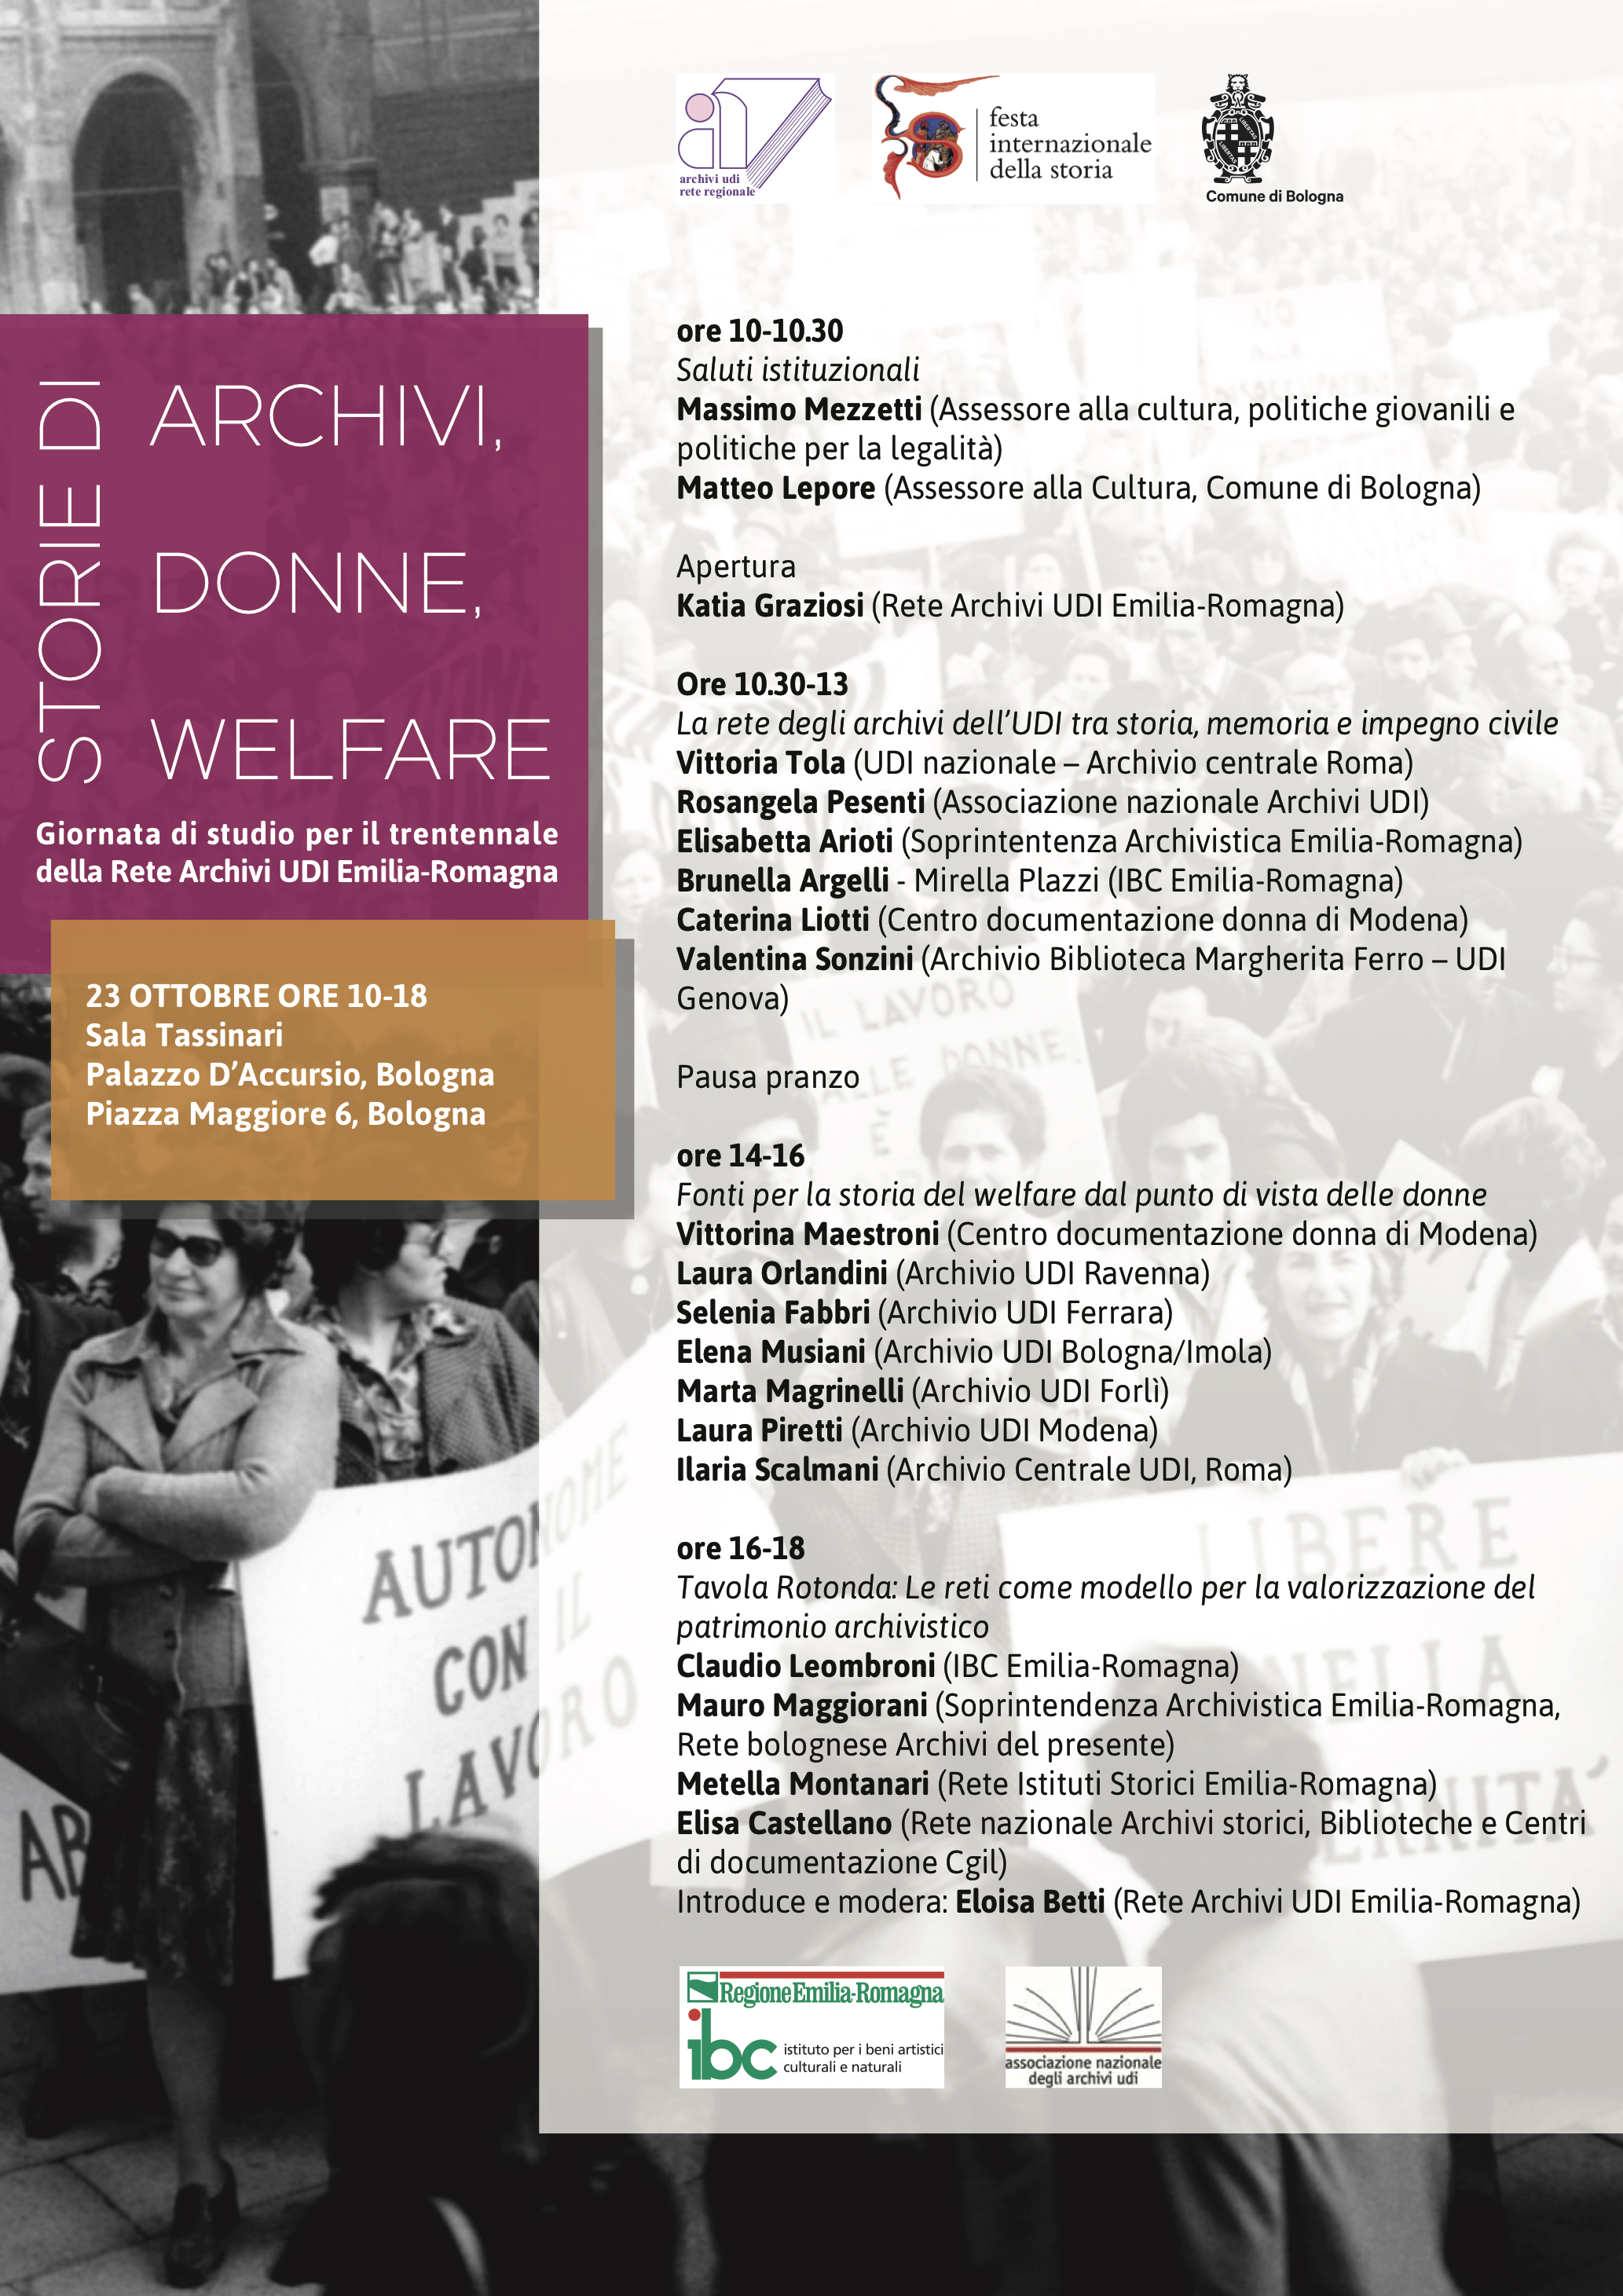 Giornata di studio per il trentennale della Rete Archivi UDI Emilia-Romagna